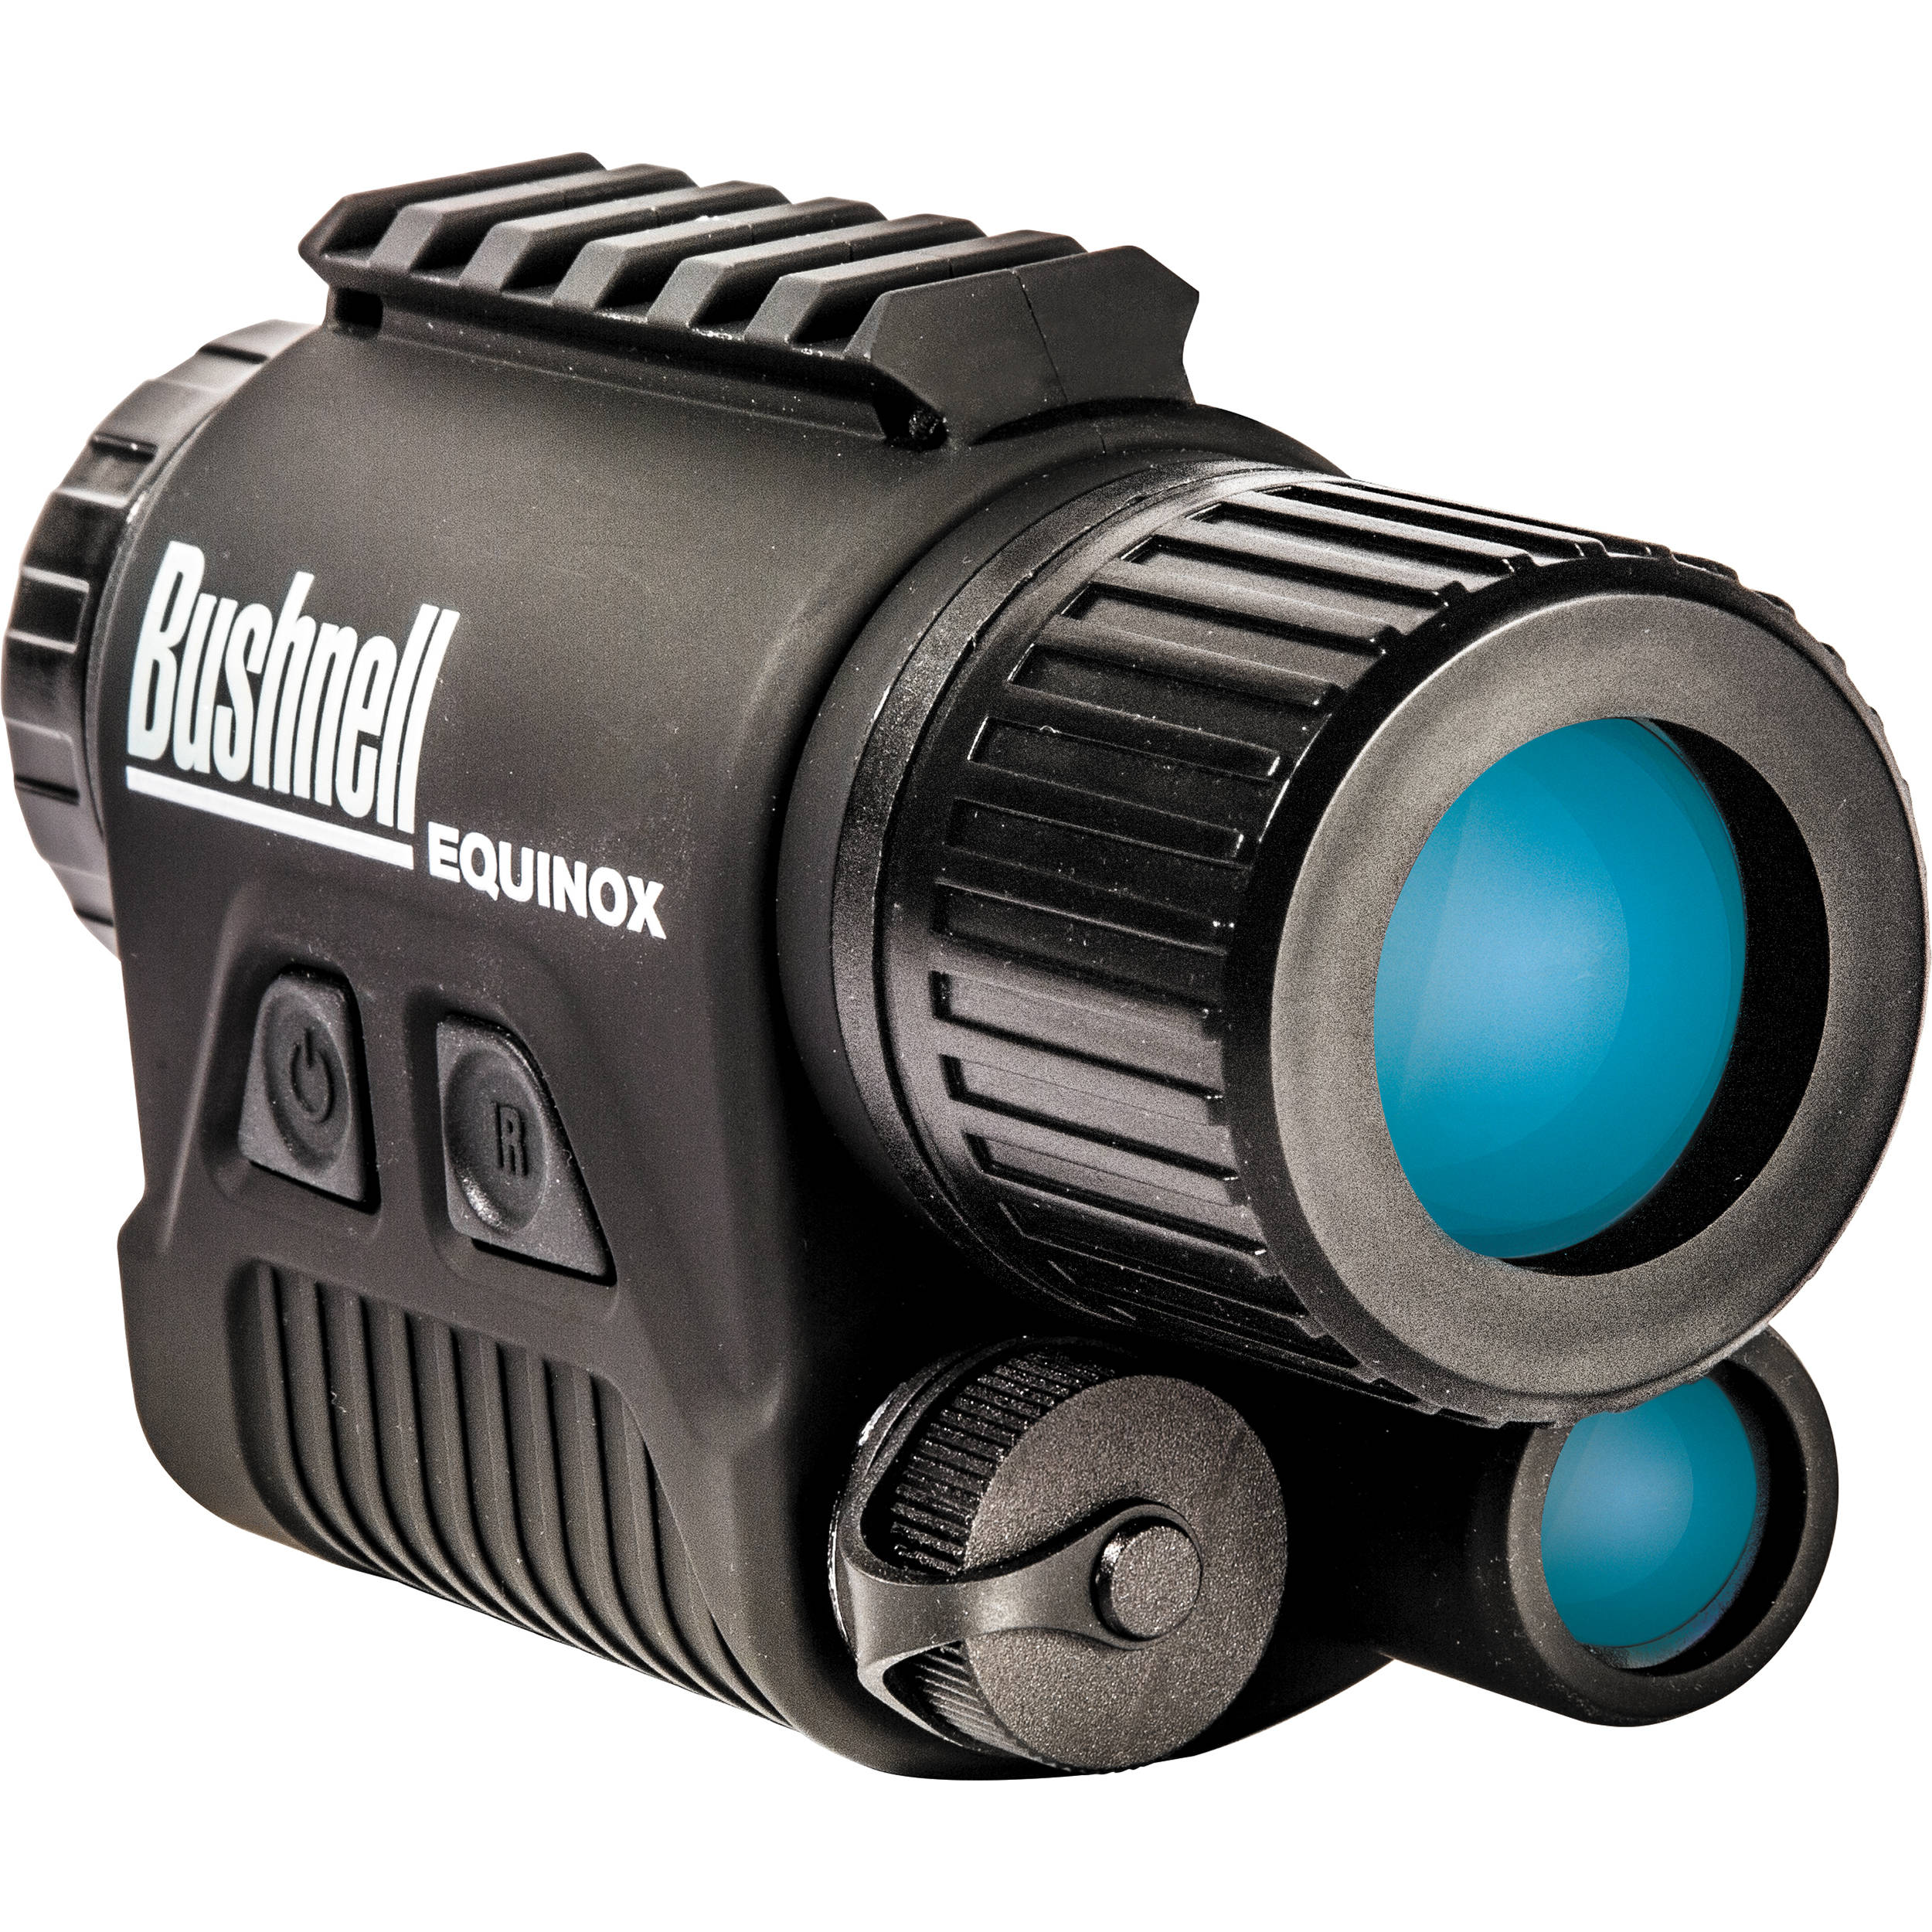 bushnell night vision camera